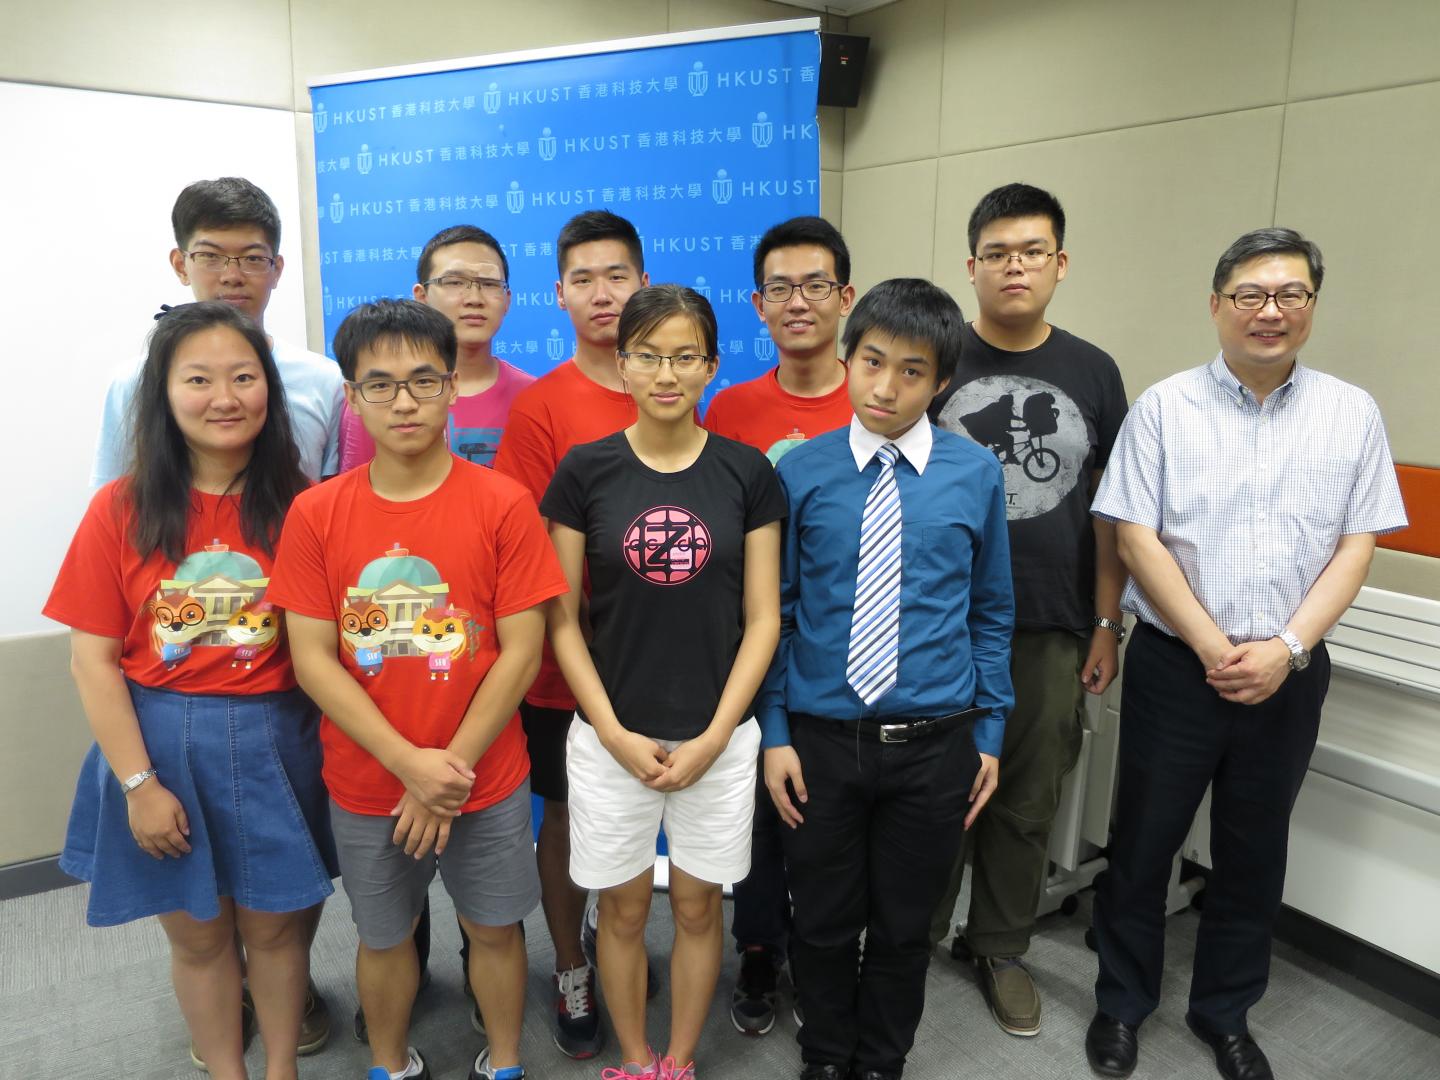  科大協理副校長譚嘉因教授(右一)恭賀東南大學、南京理工大學及科大的獲獎隊伍。